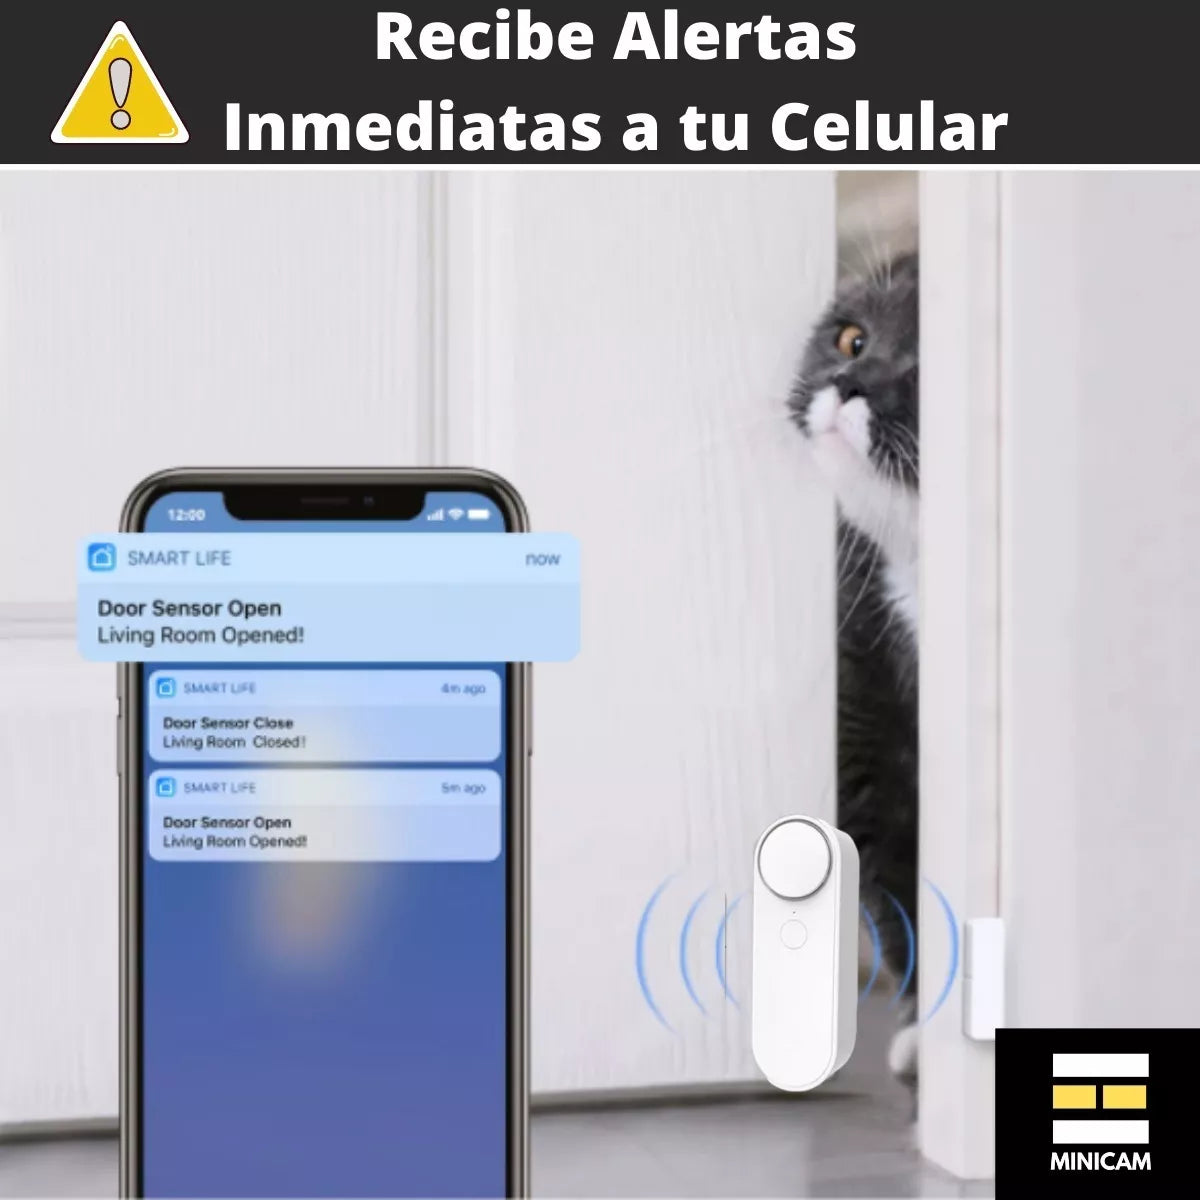 Sensor Puerta-ventana Wifi Con Alarma Sonora Inalámbrico – Metacompras